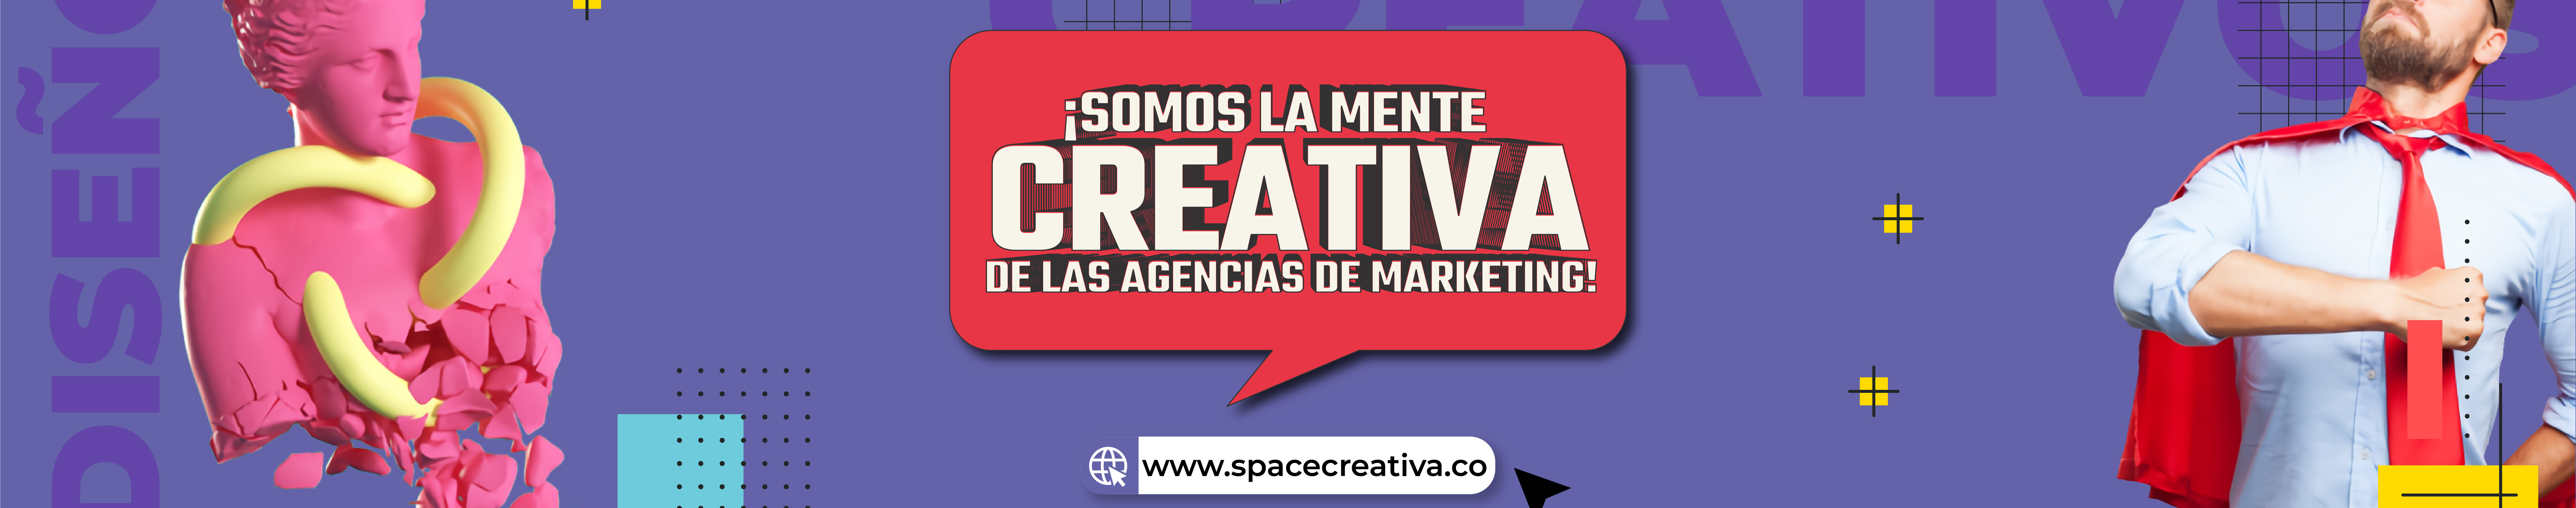 Space Agencia Creativa's profile banner